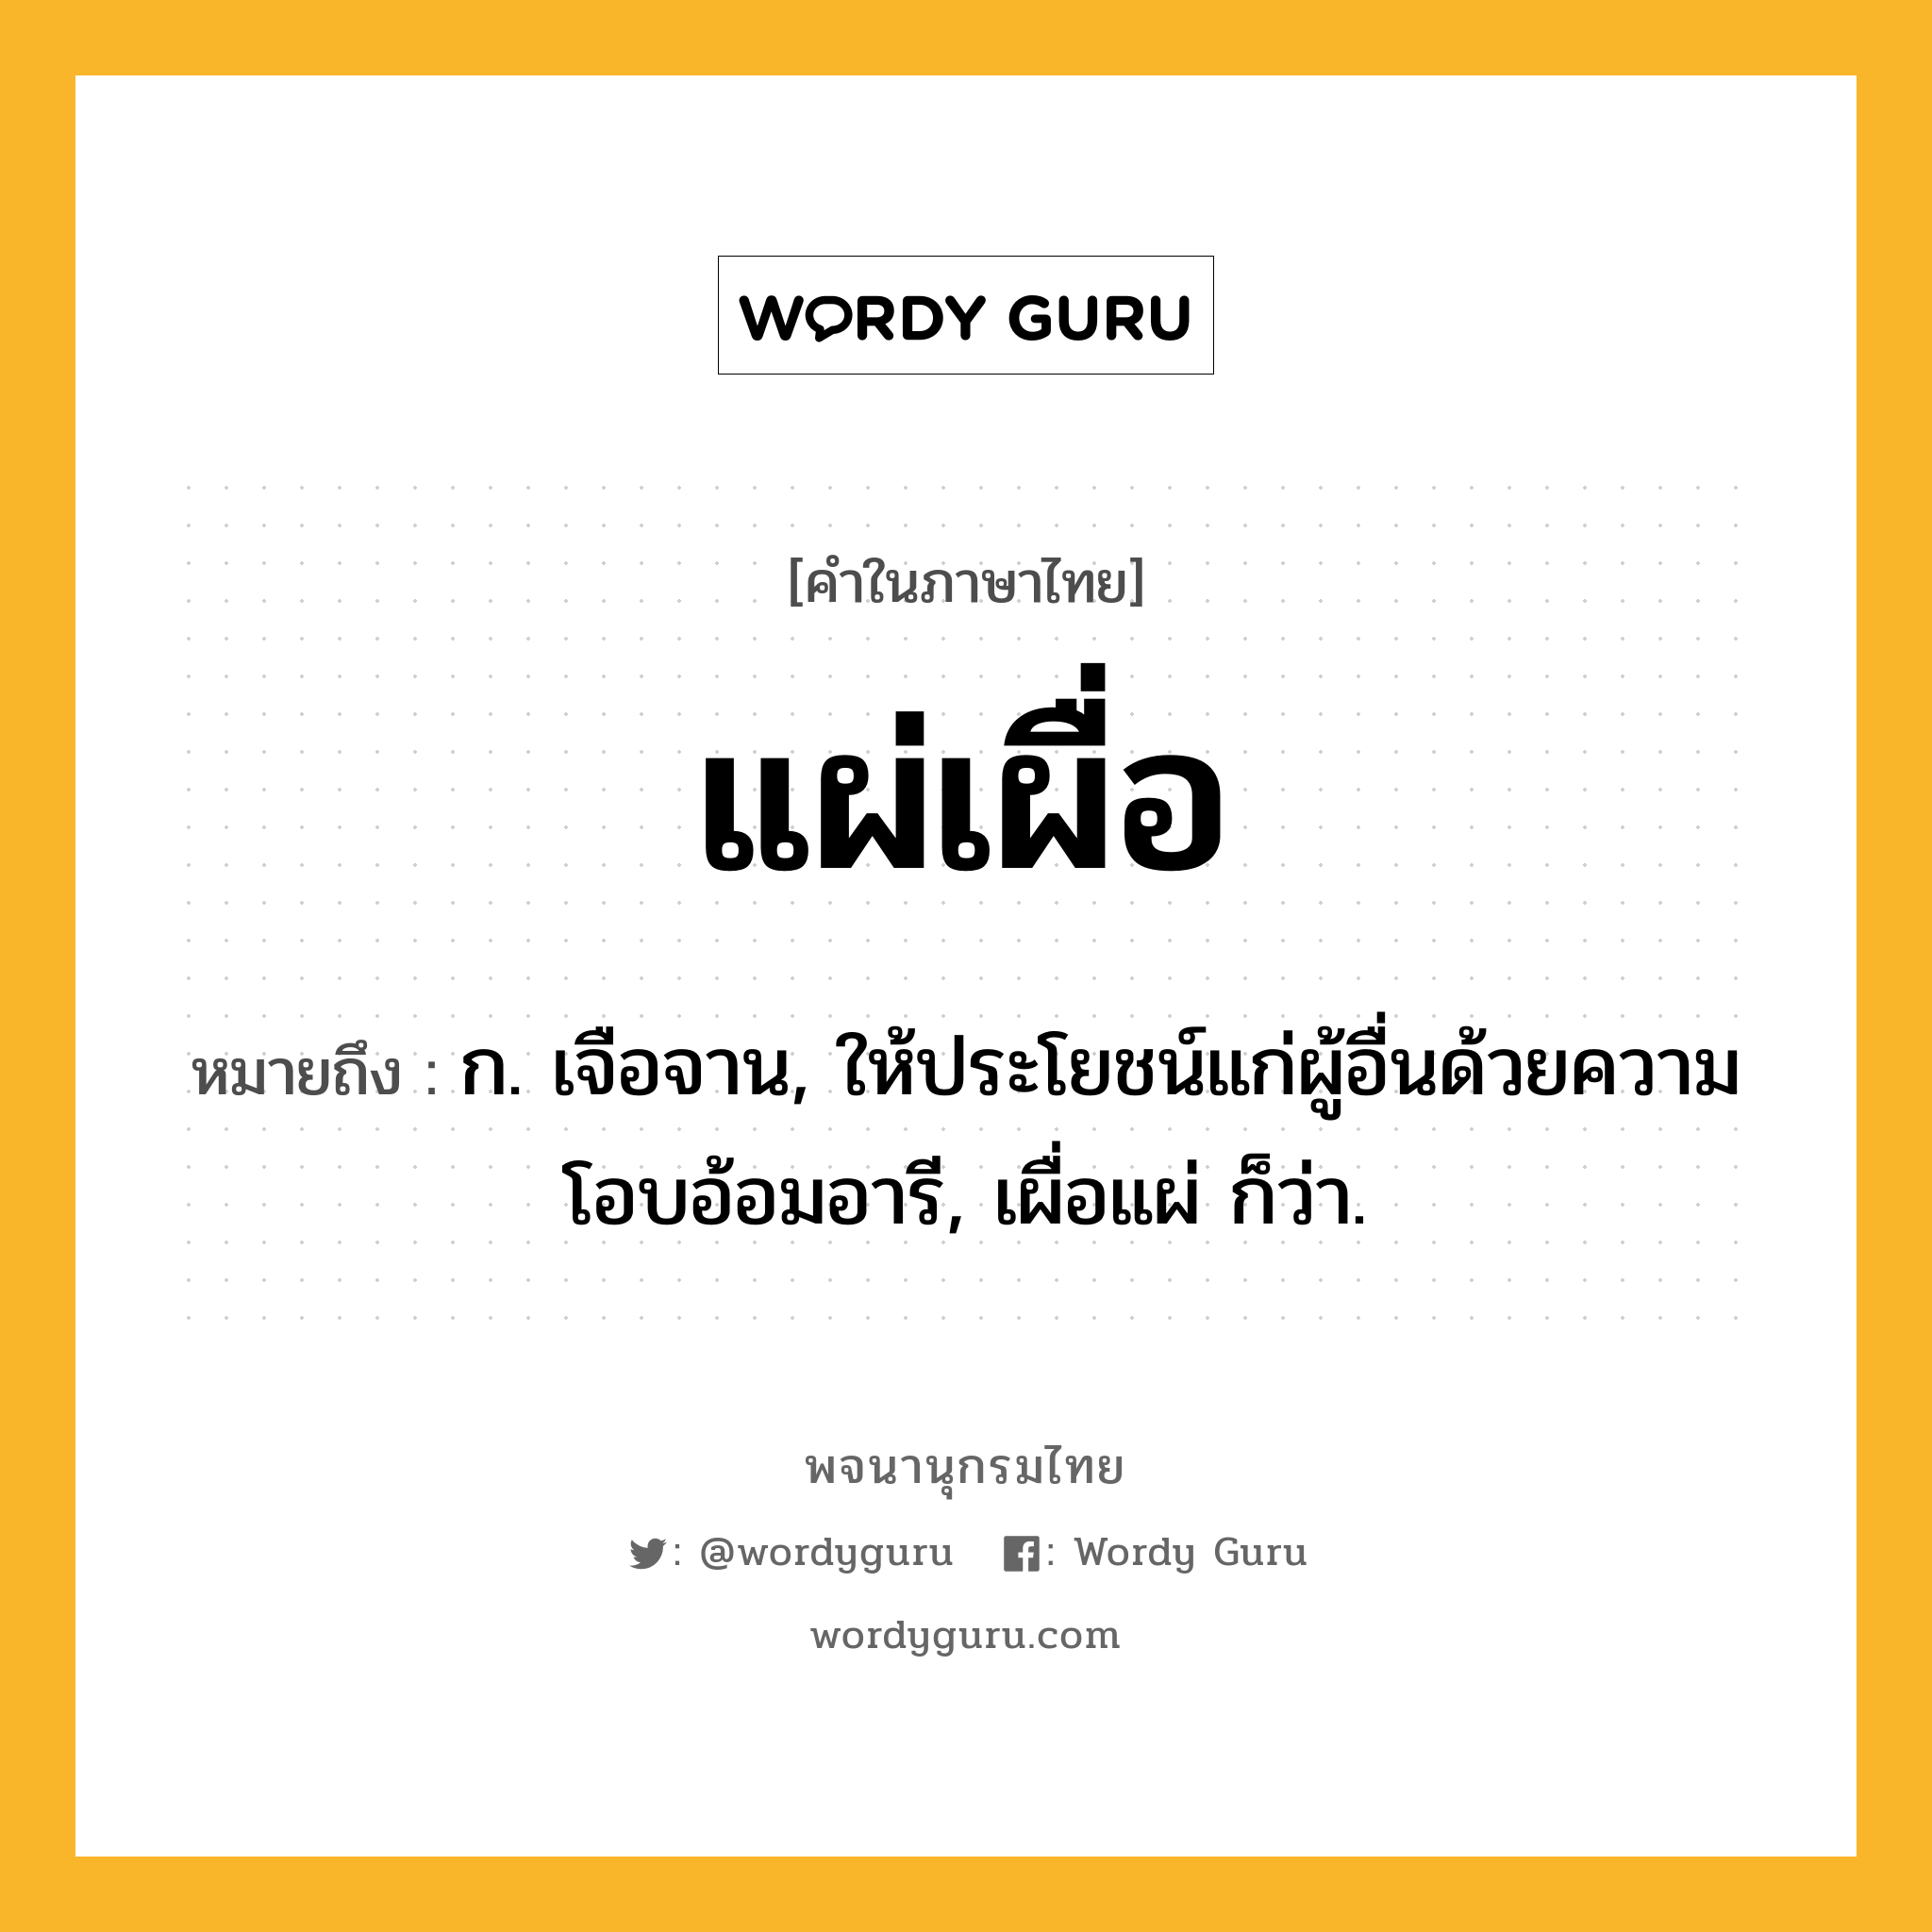 แผ่เผื่อ ความหมาย หมายถึงอะไร?, คำในภาษาไทย แผ่เผื่อ หมายถึง ก. เจือจาน, ให้ประโยชน์แก่ผู้อื่นด้วยความโอบอ้อมอารี, เผื่อแผ่ ก็ว่า.